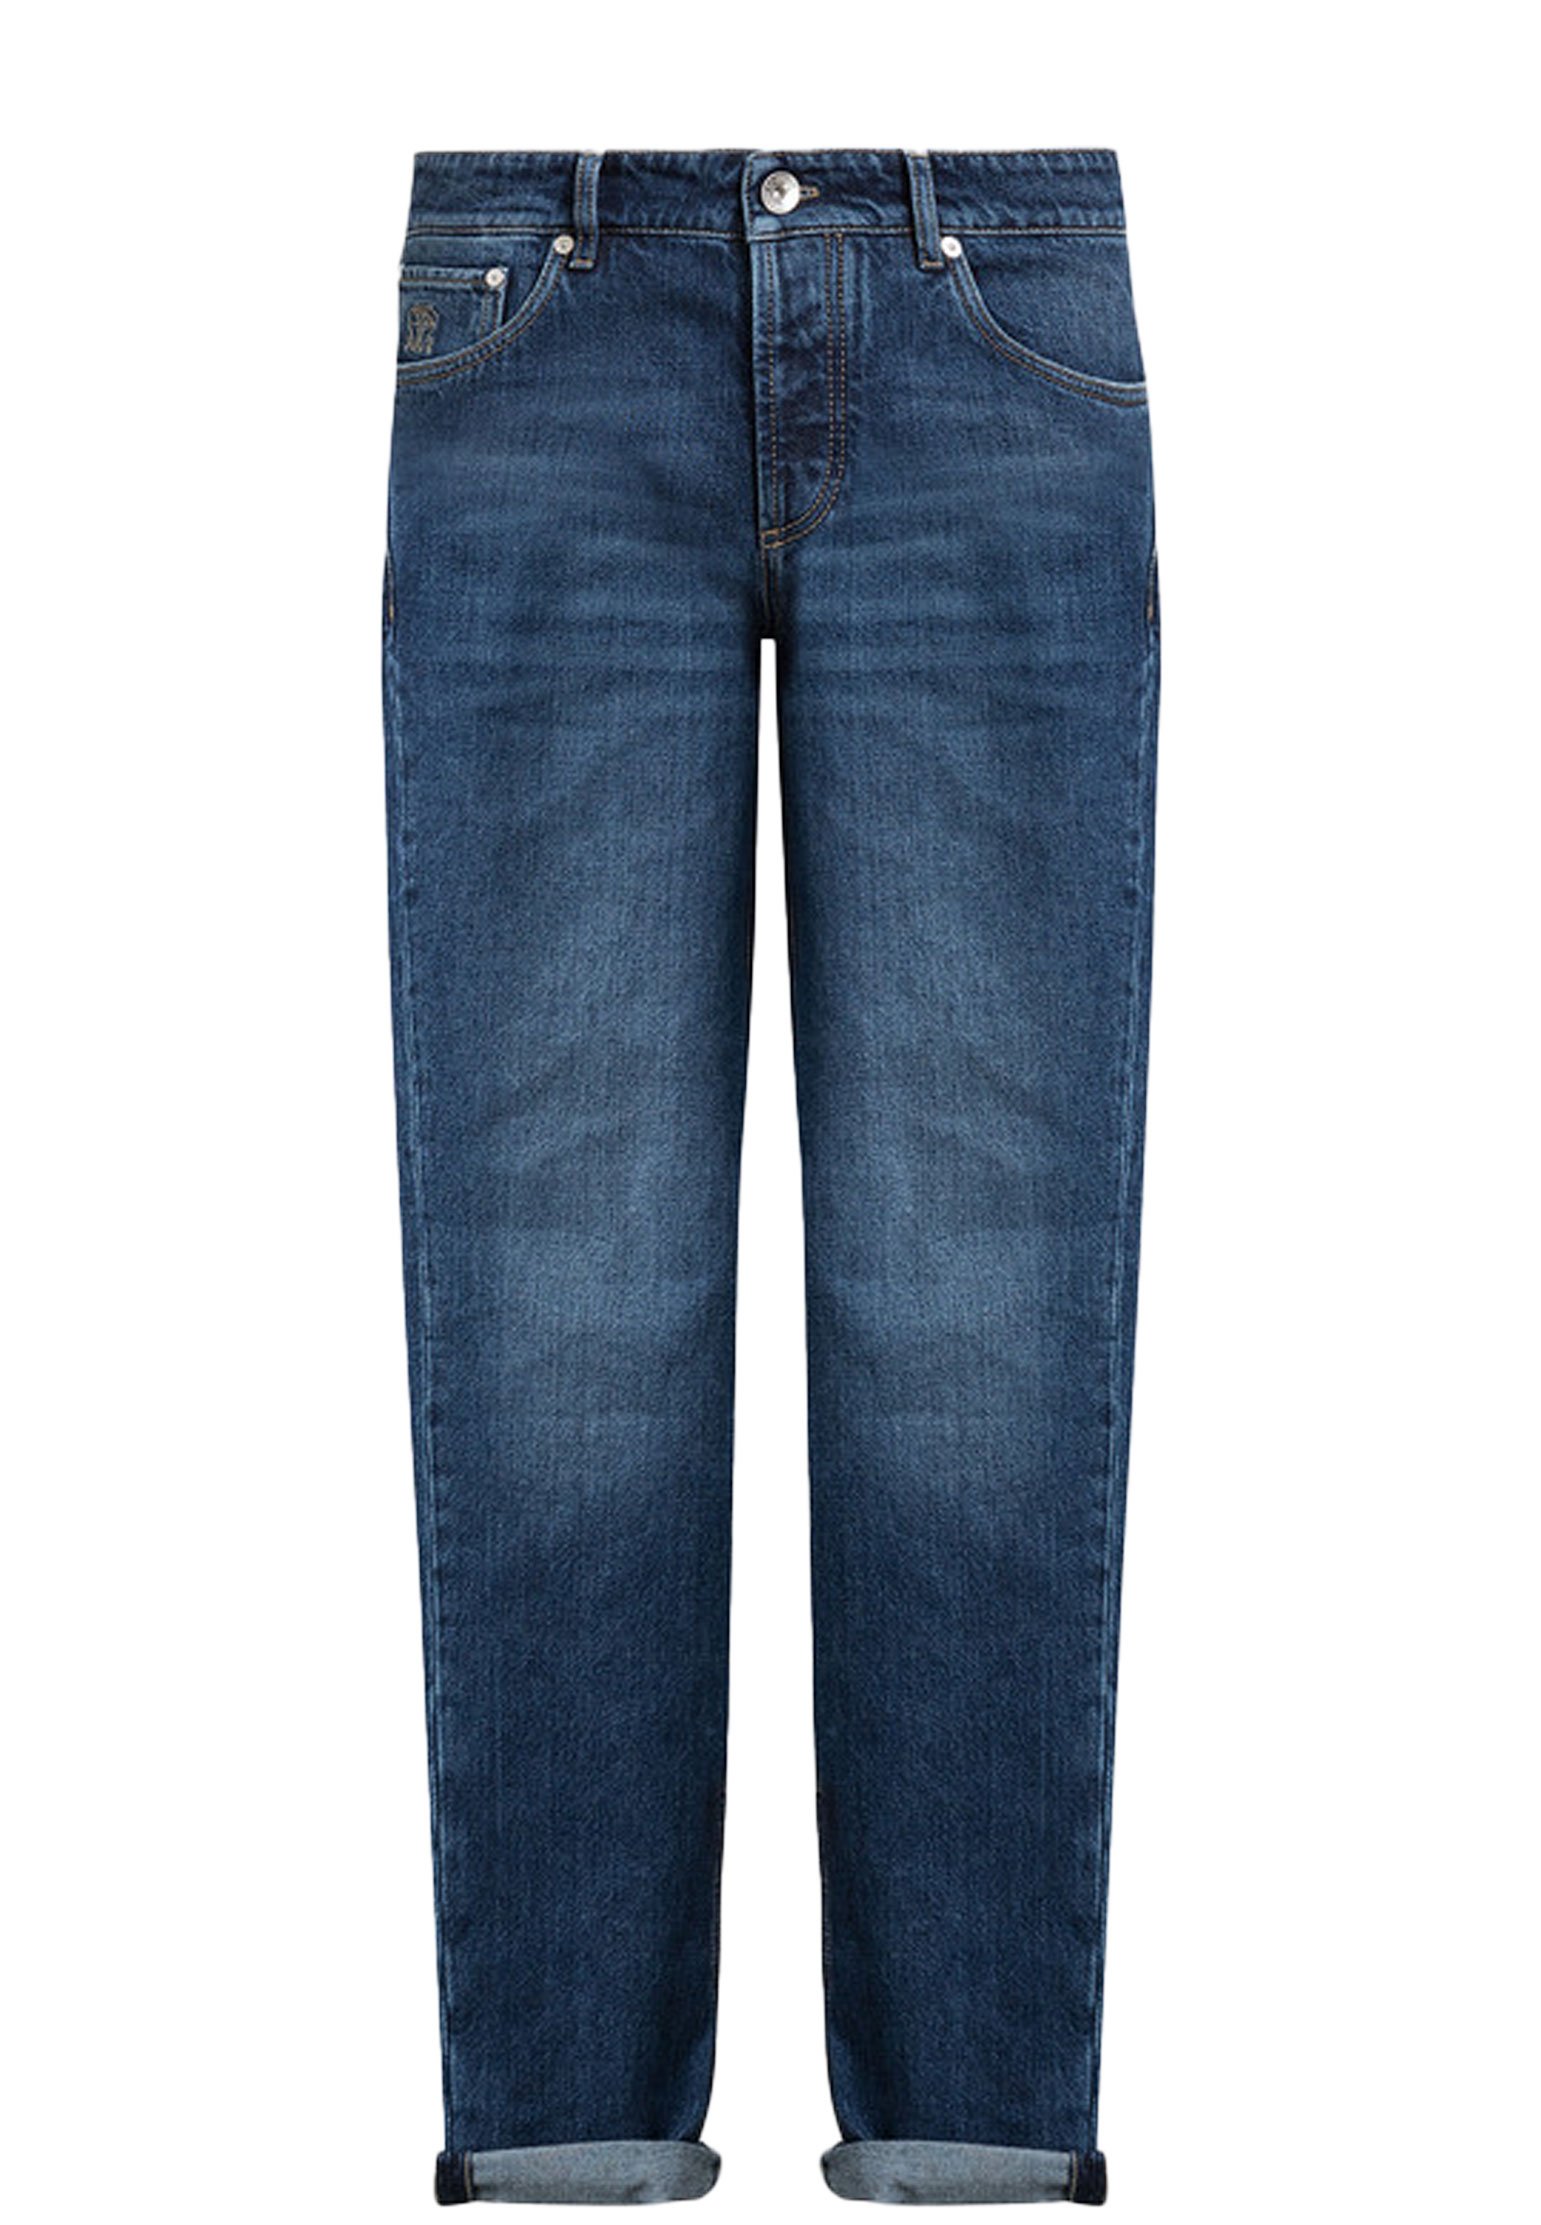 Pantalone BRUNELLO CUCINELLI Color: blue (Code: 779) in online store Allure